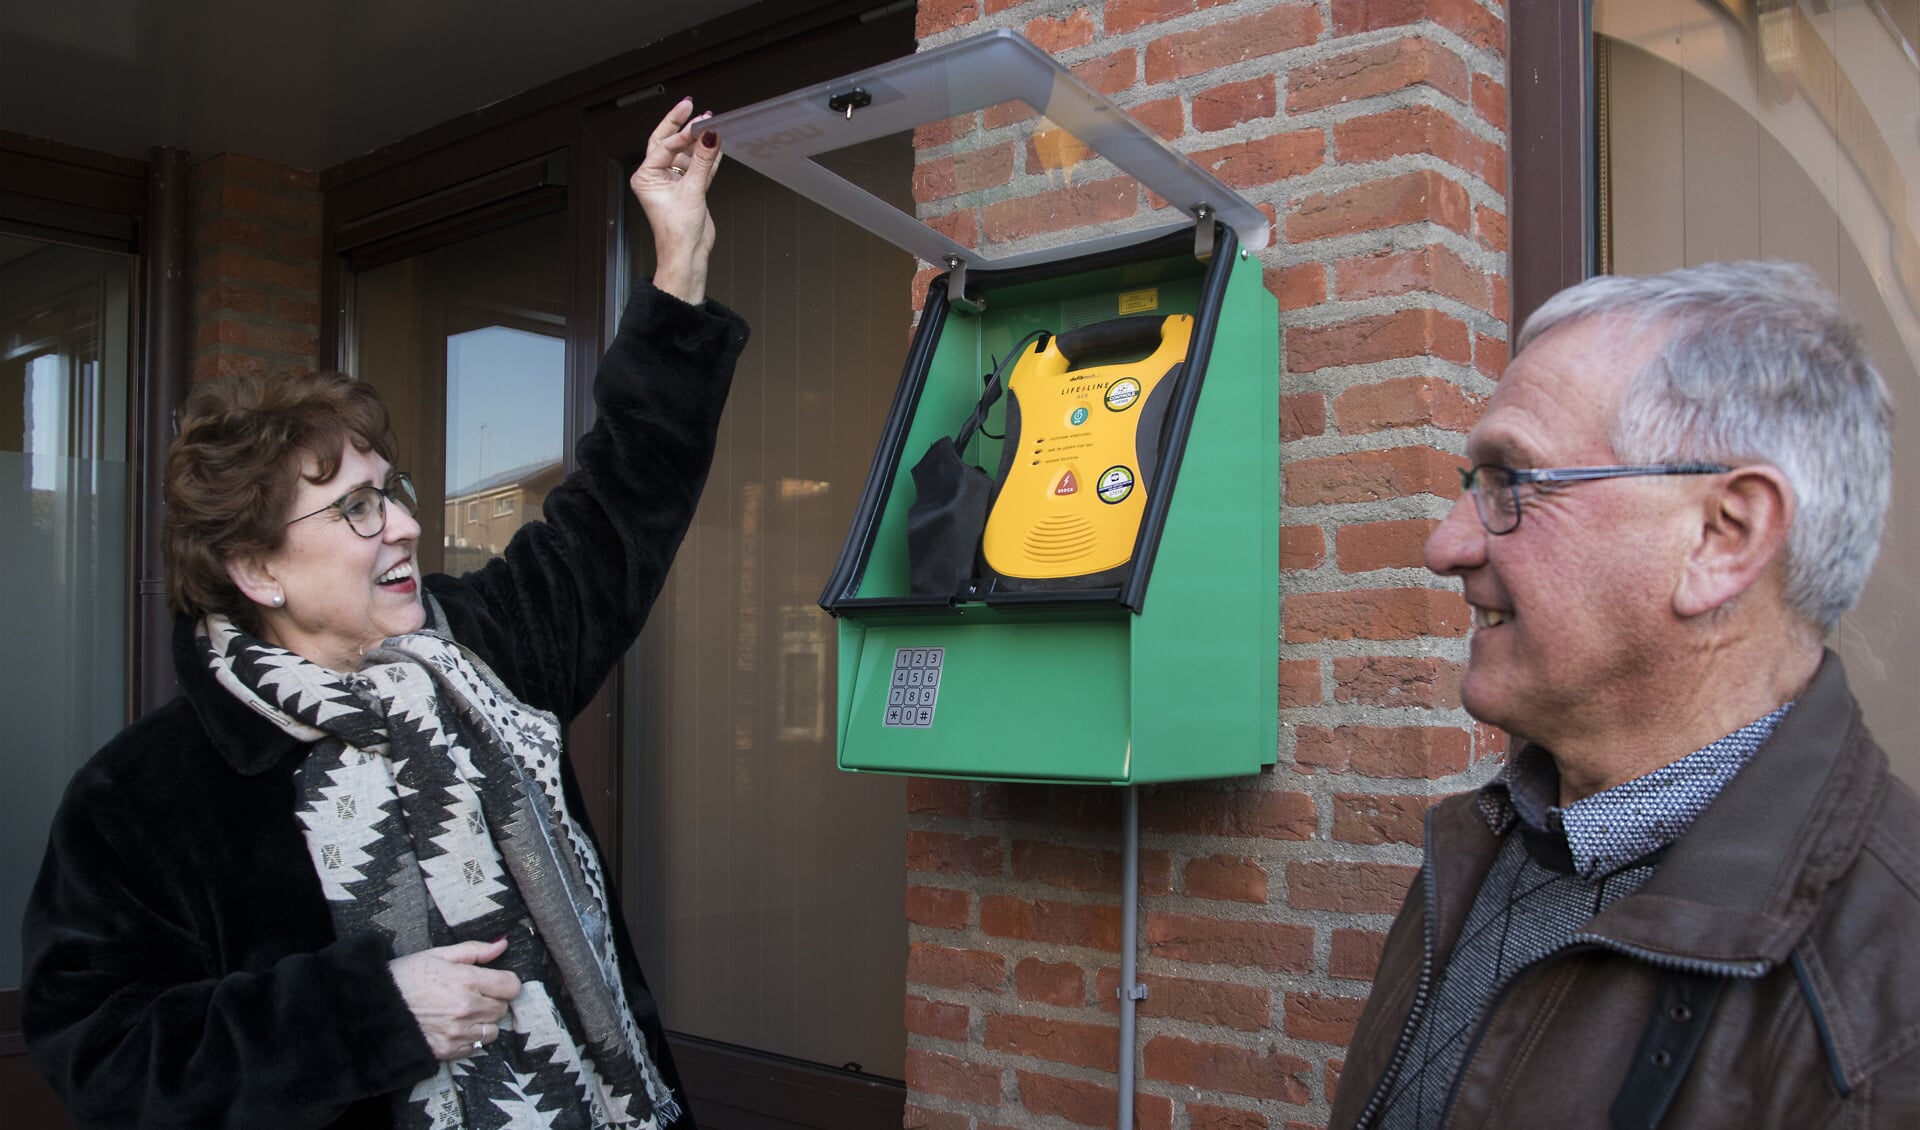 De eerste AED in een buitenkast hangt naast de ingang van het gemeentehuis in Rockanje (Foto: Jos Uijtdehaage)